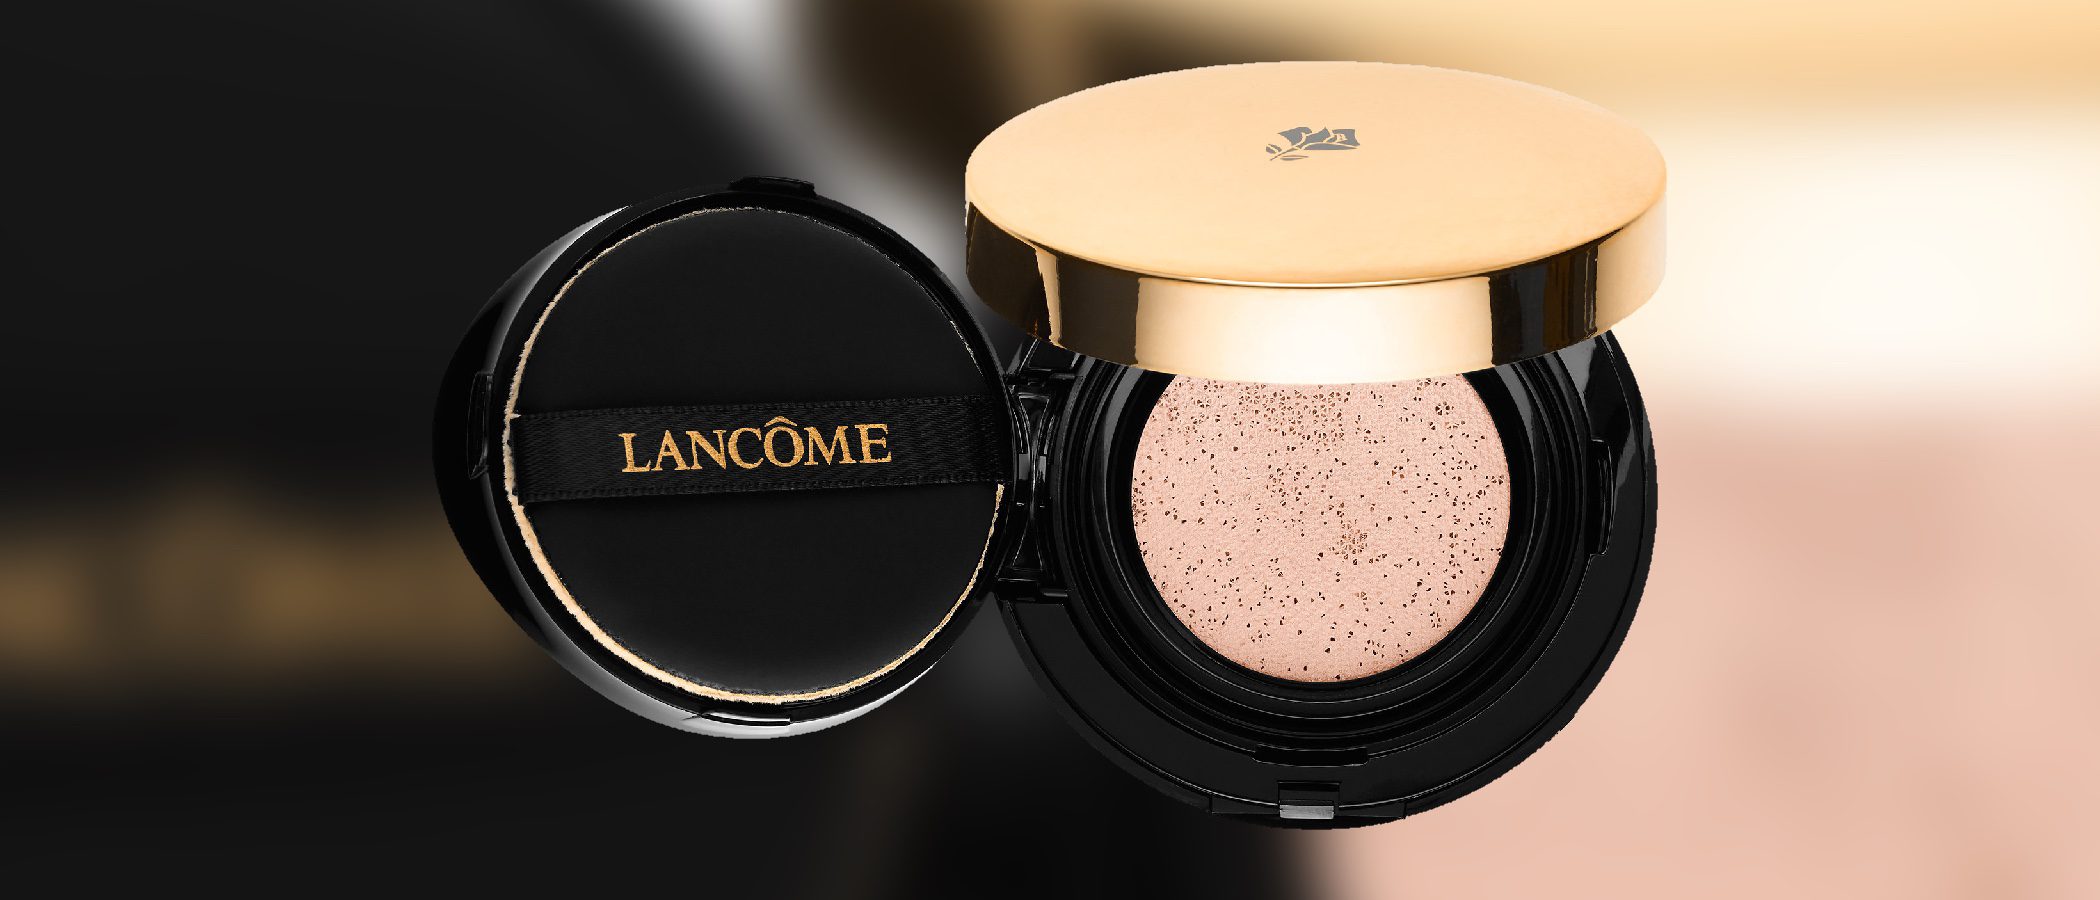 Lancôme saca una nueva base de maquillaje en formato cushion - Bekia Belleza